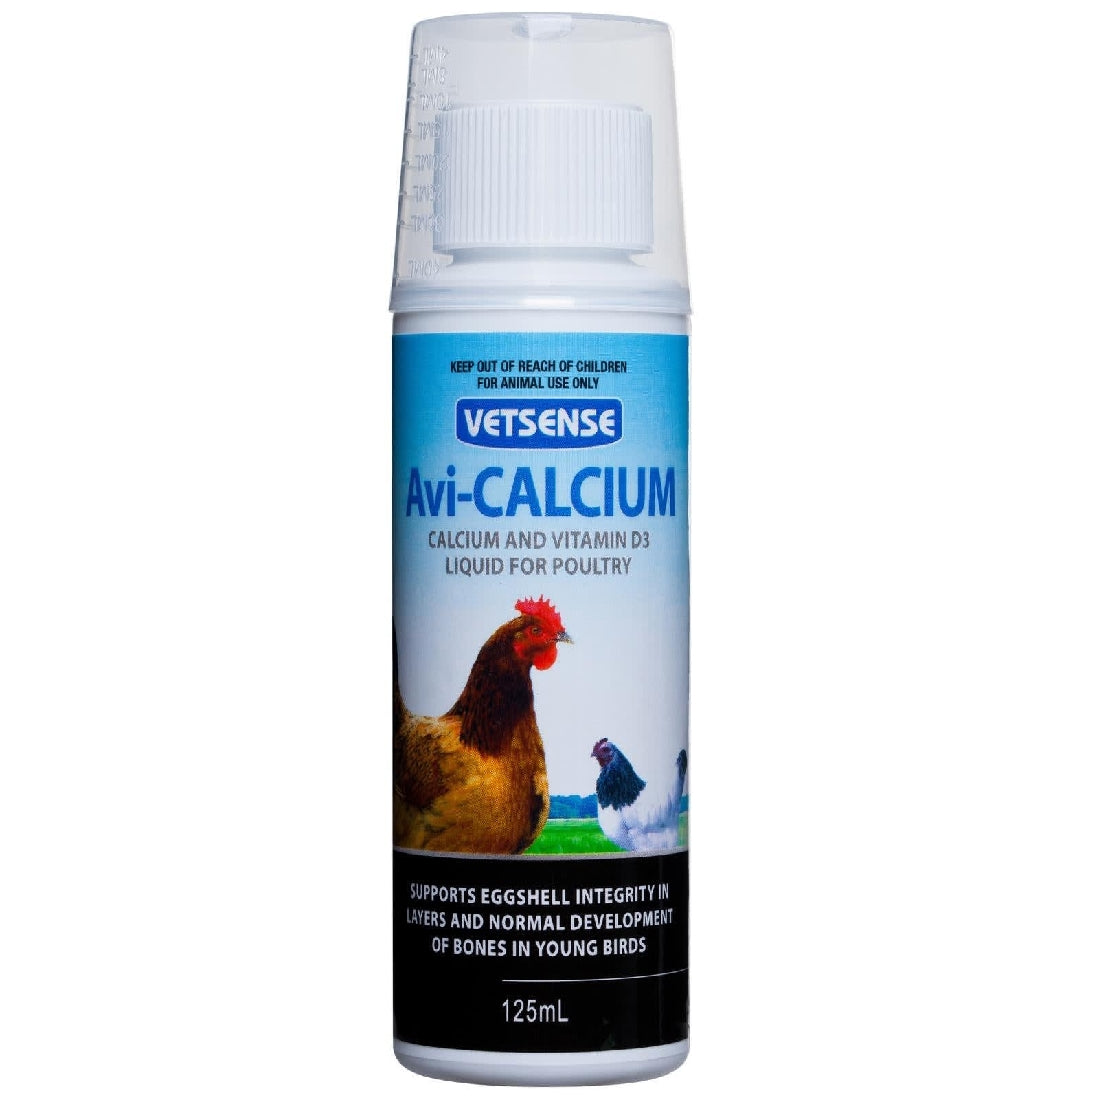 Vetsense Avi-calcium For Poultry Birds & Chickens - 125ml